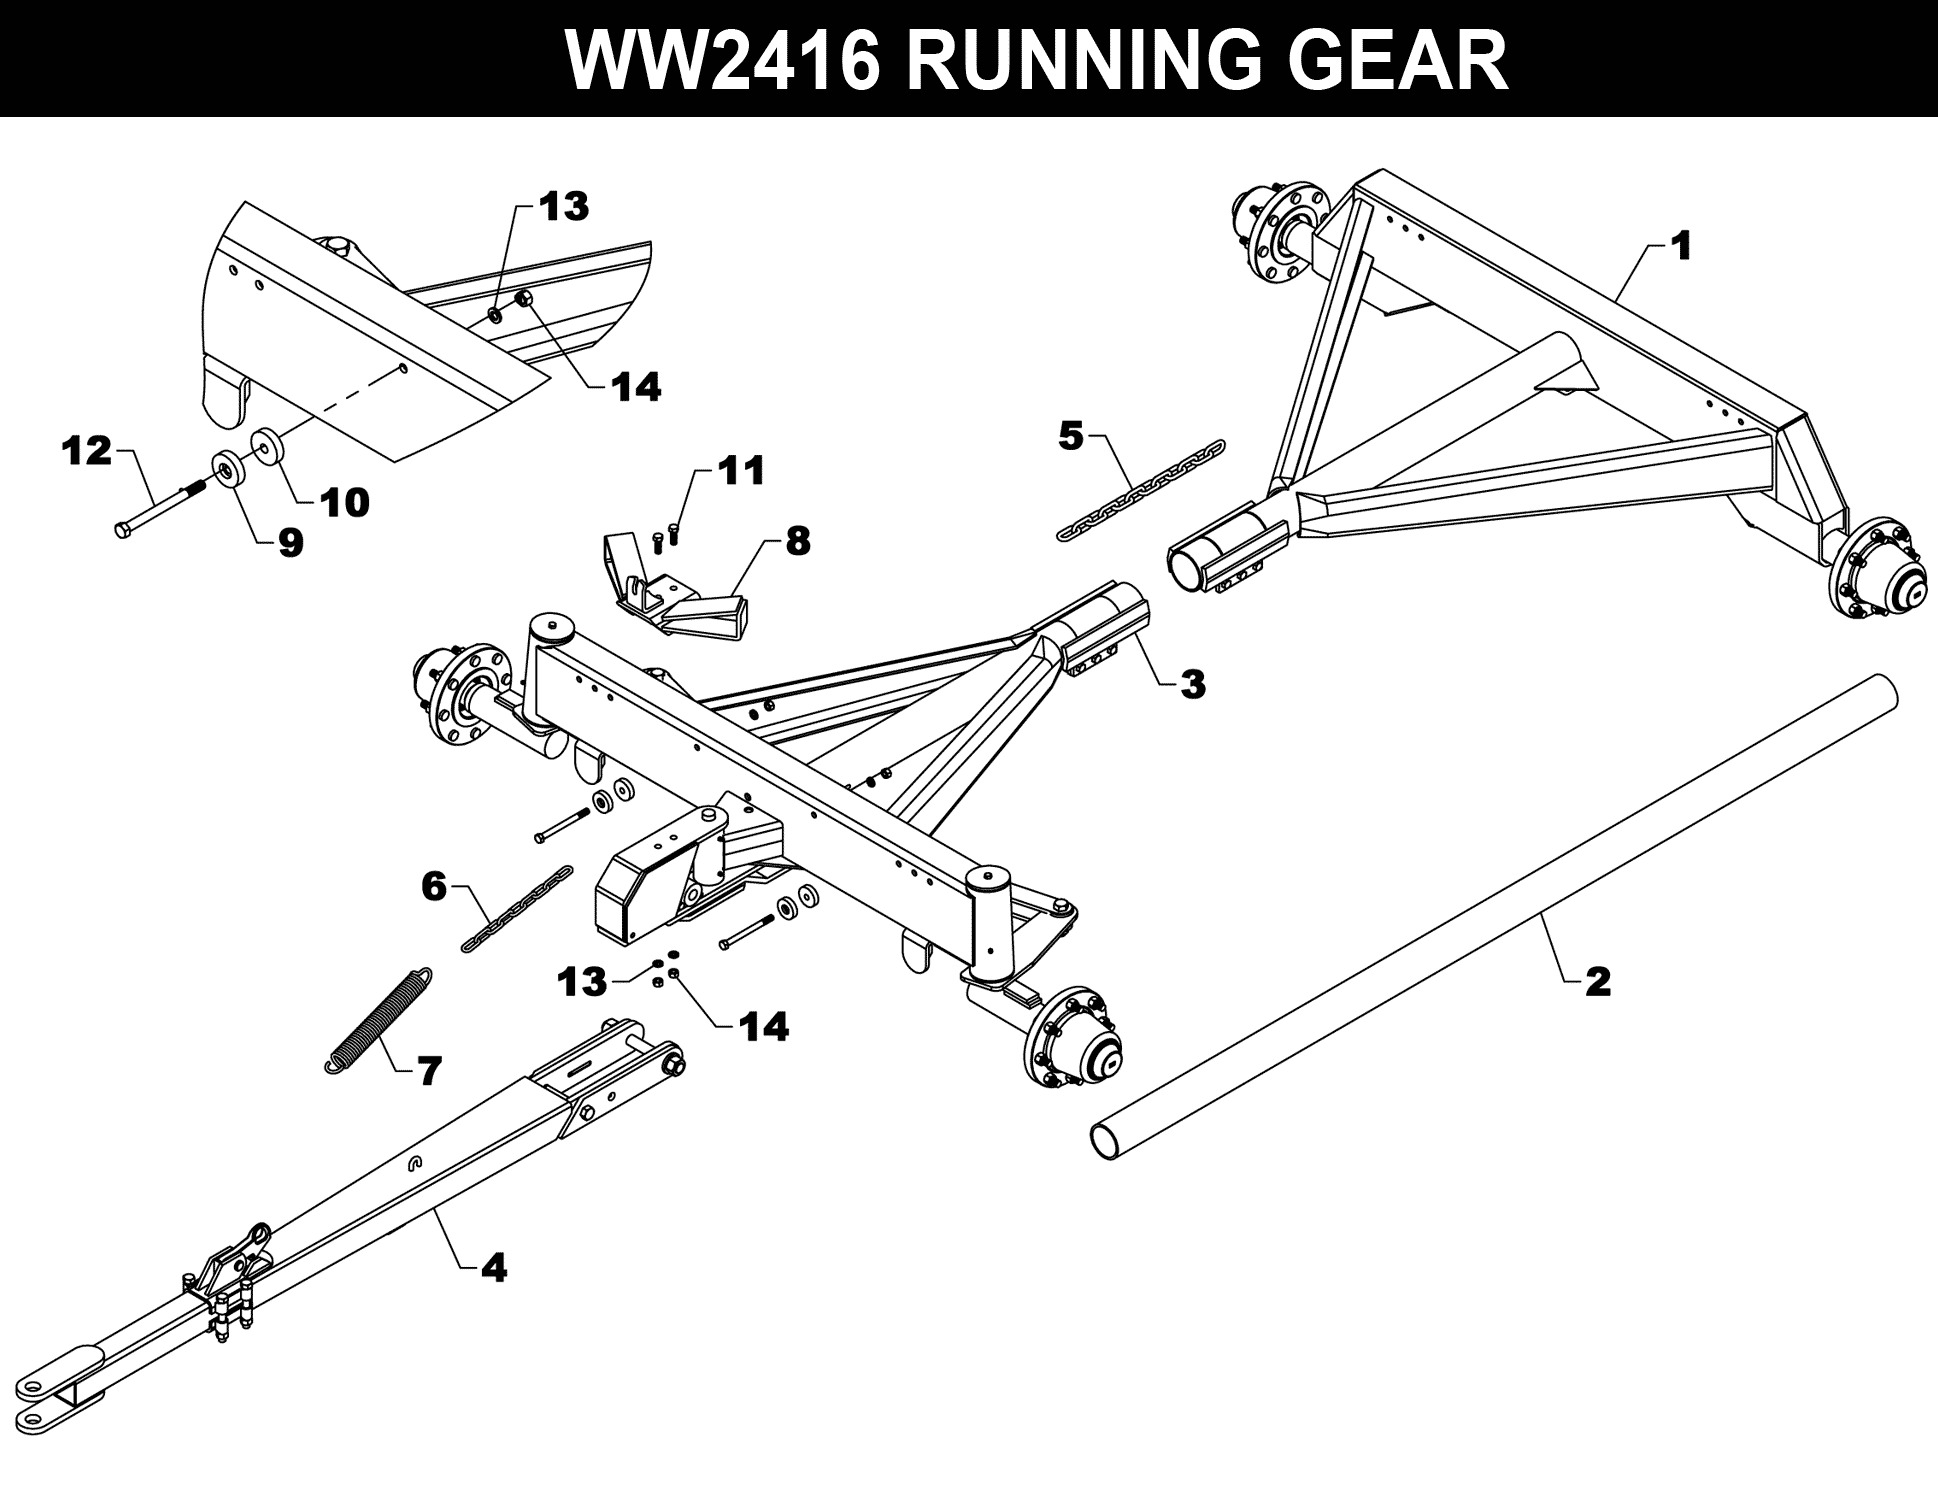 WW-2416 Parts